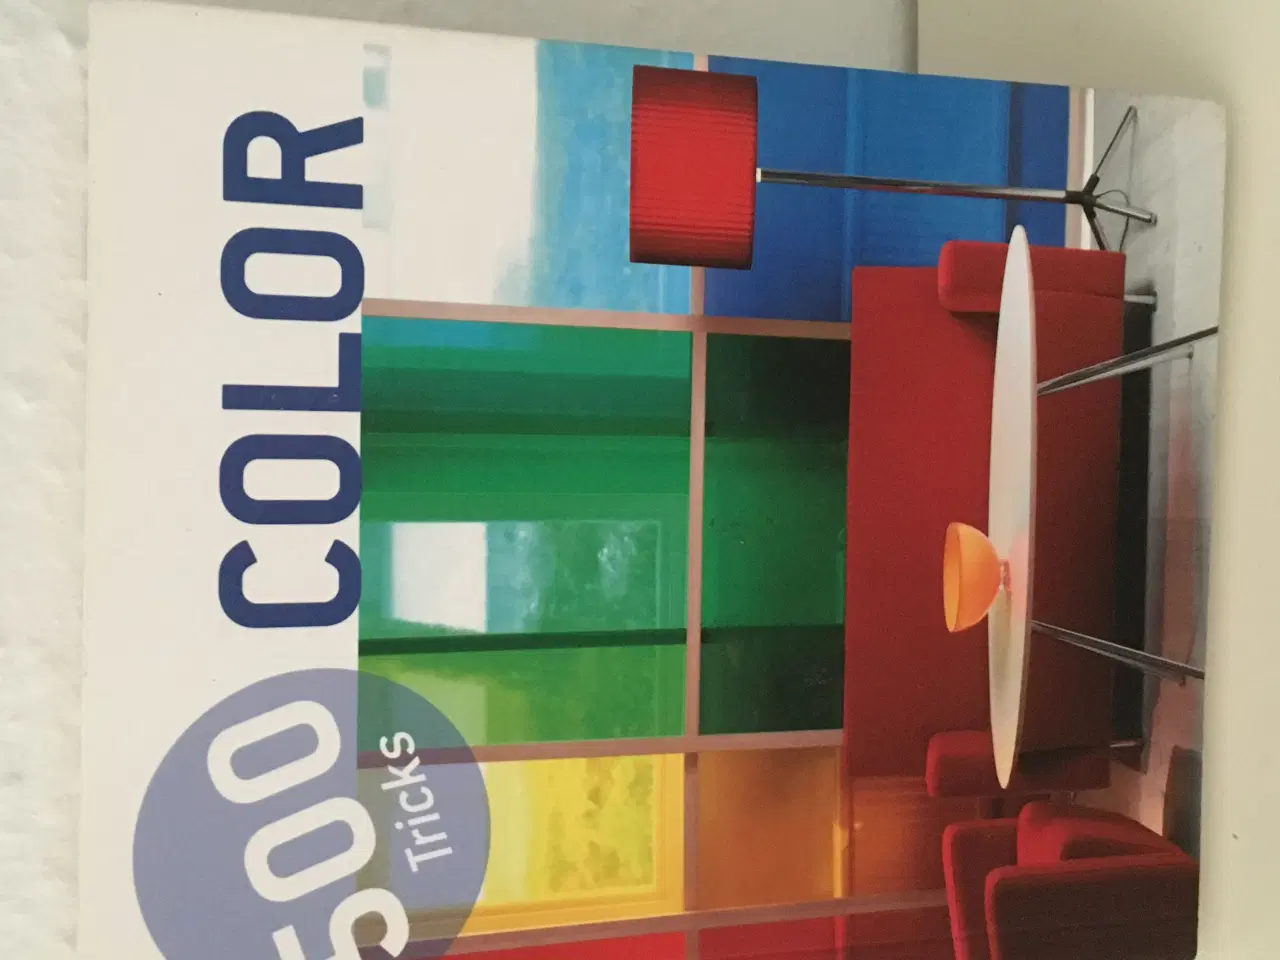 Billede 1 - Bog om farver og indretning